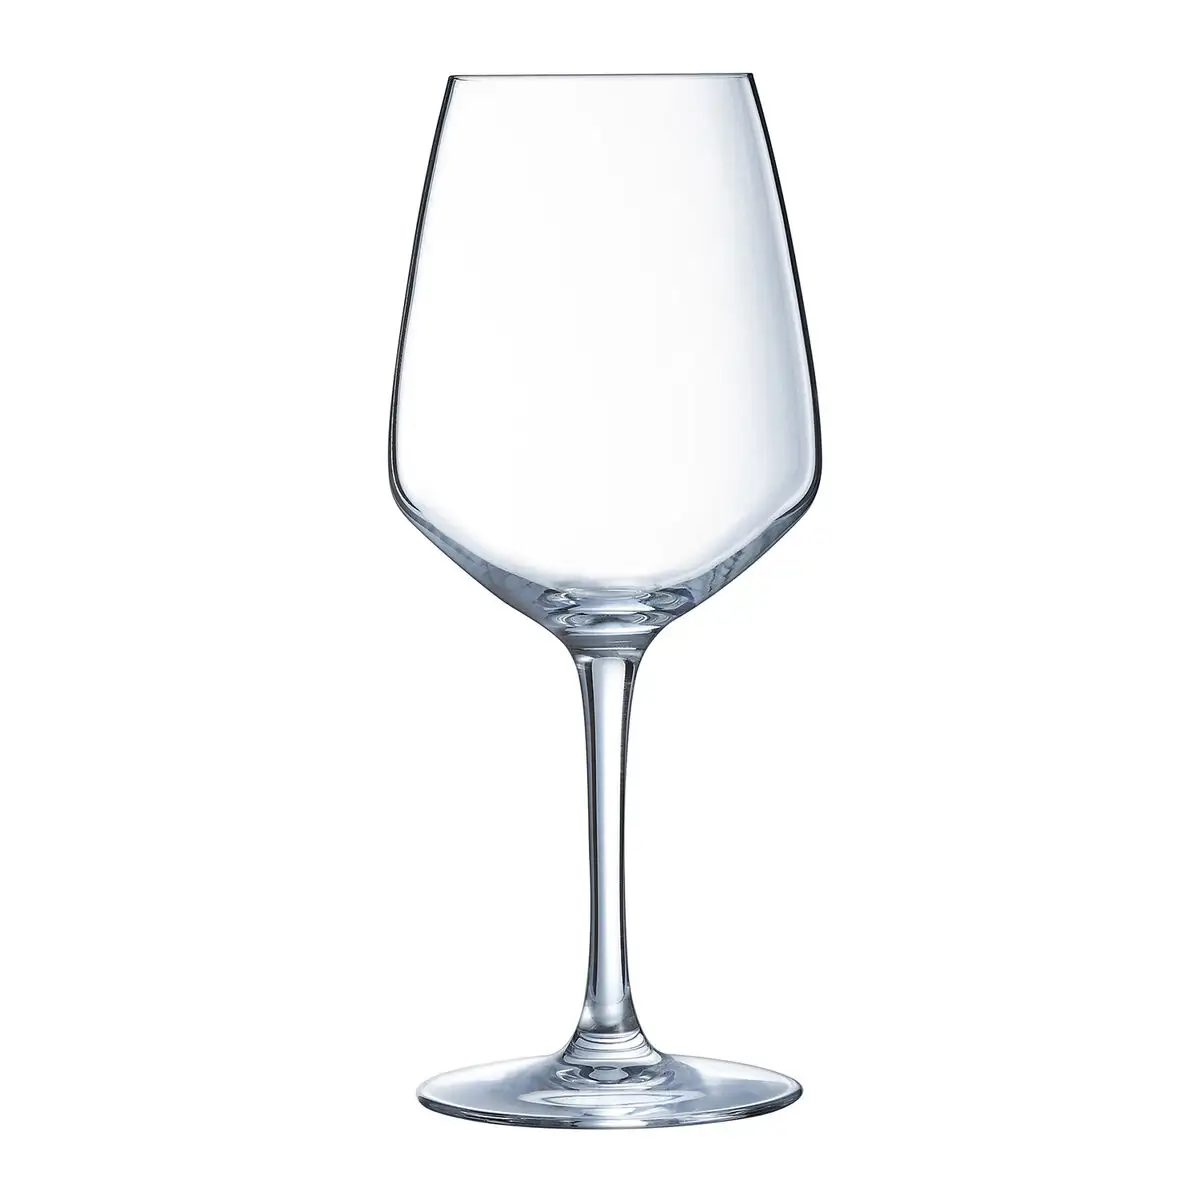 Set de verres arcoroc vina juliette vin transparent 400 ml 6 unites_6792. Découvrez DIAYTAR SENEGAL - Votre Destination de Shopping Inspirée. Naviguez à travers nos offres variées et trouvez des articles qui reflètent votre personnalité et vos goûts.